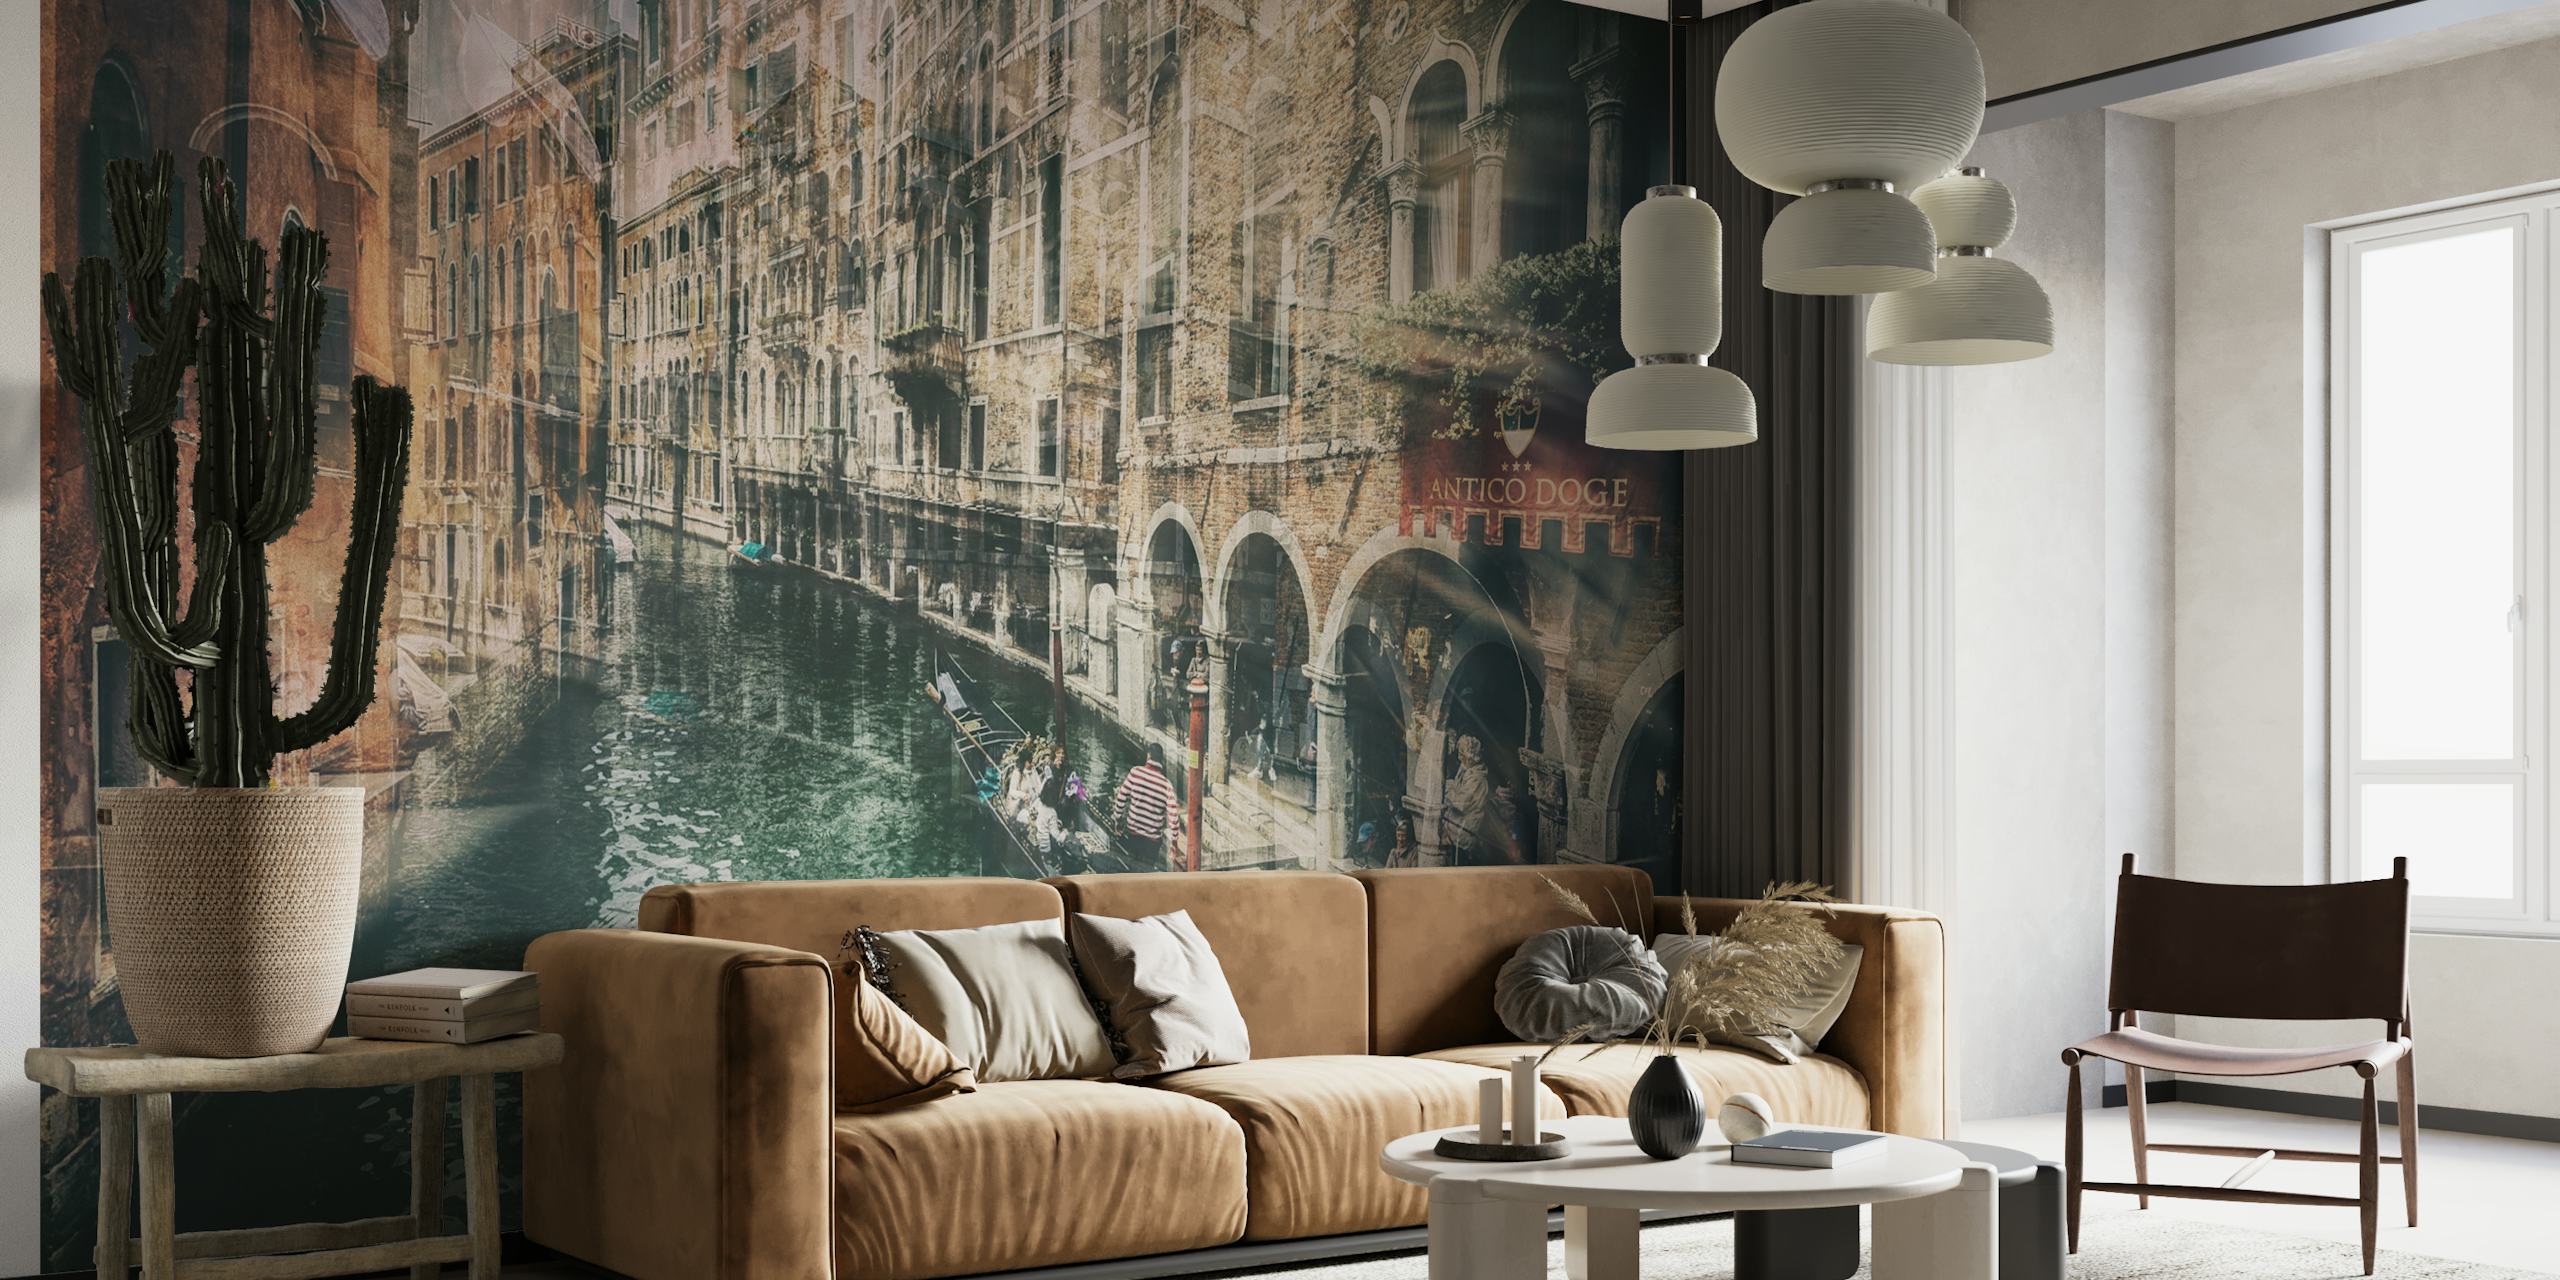 Fototapeta ve vintage stylu zobrazující benátský kanál s historickou architekturou